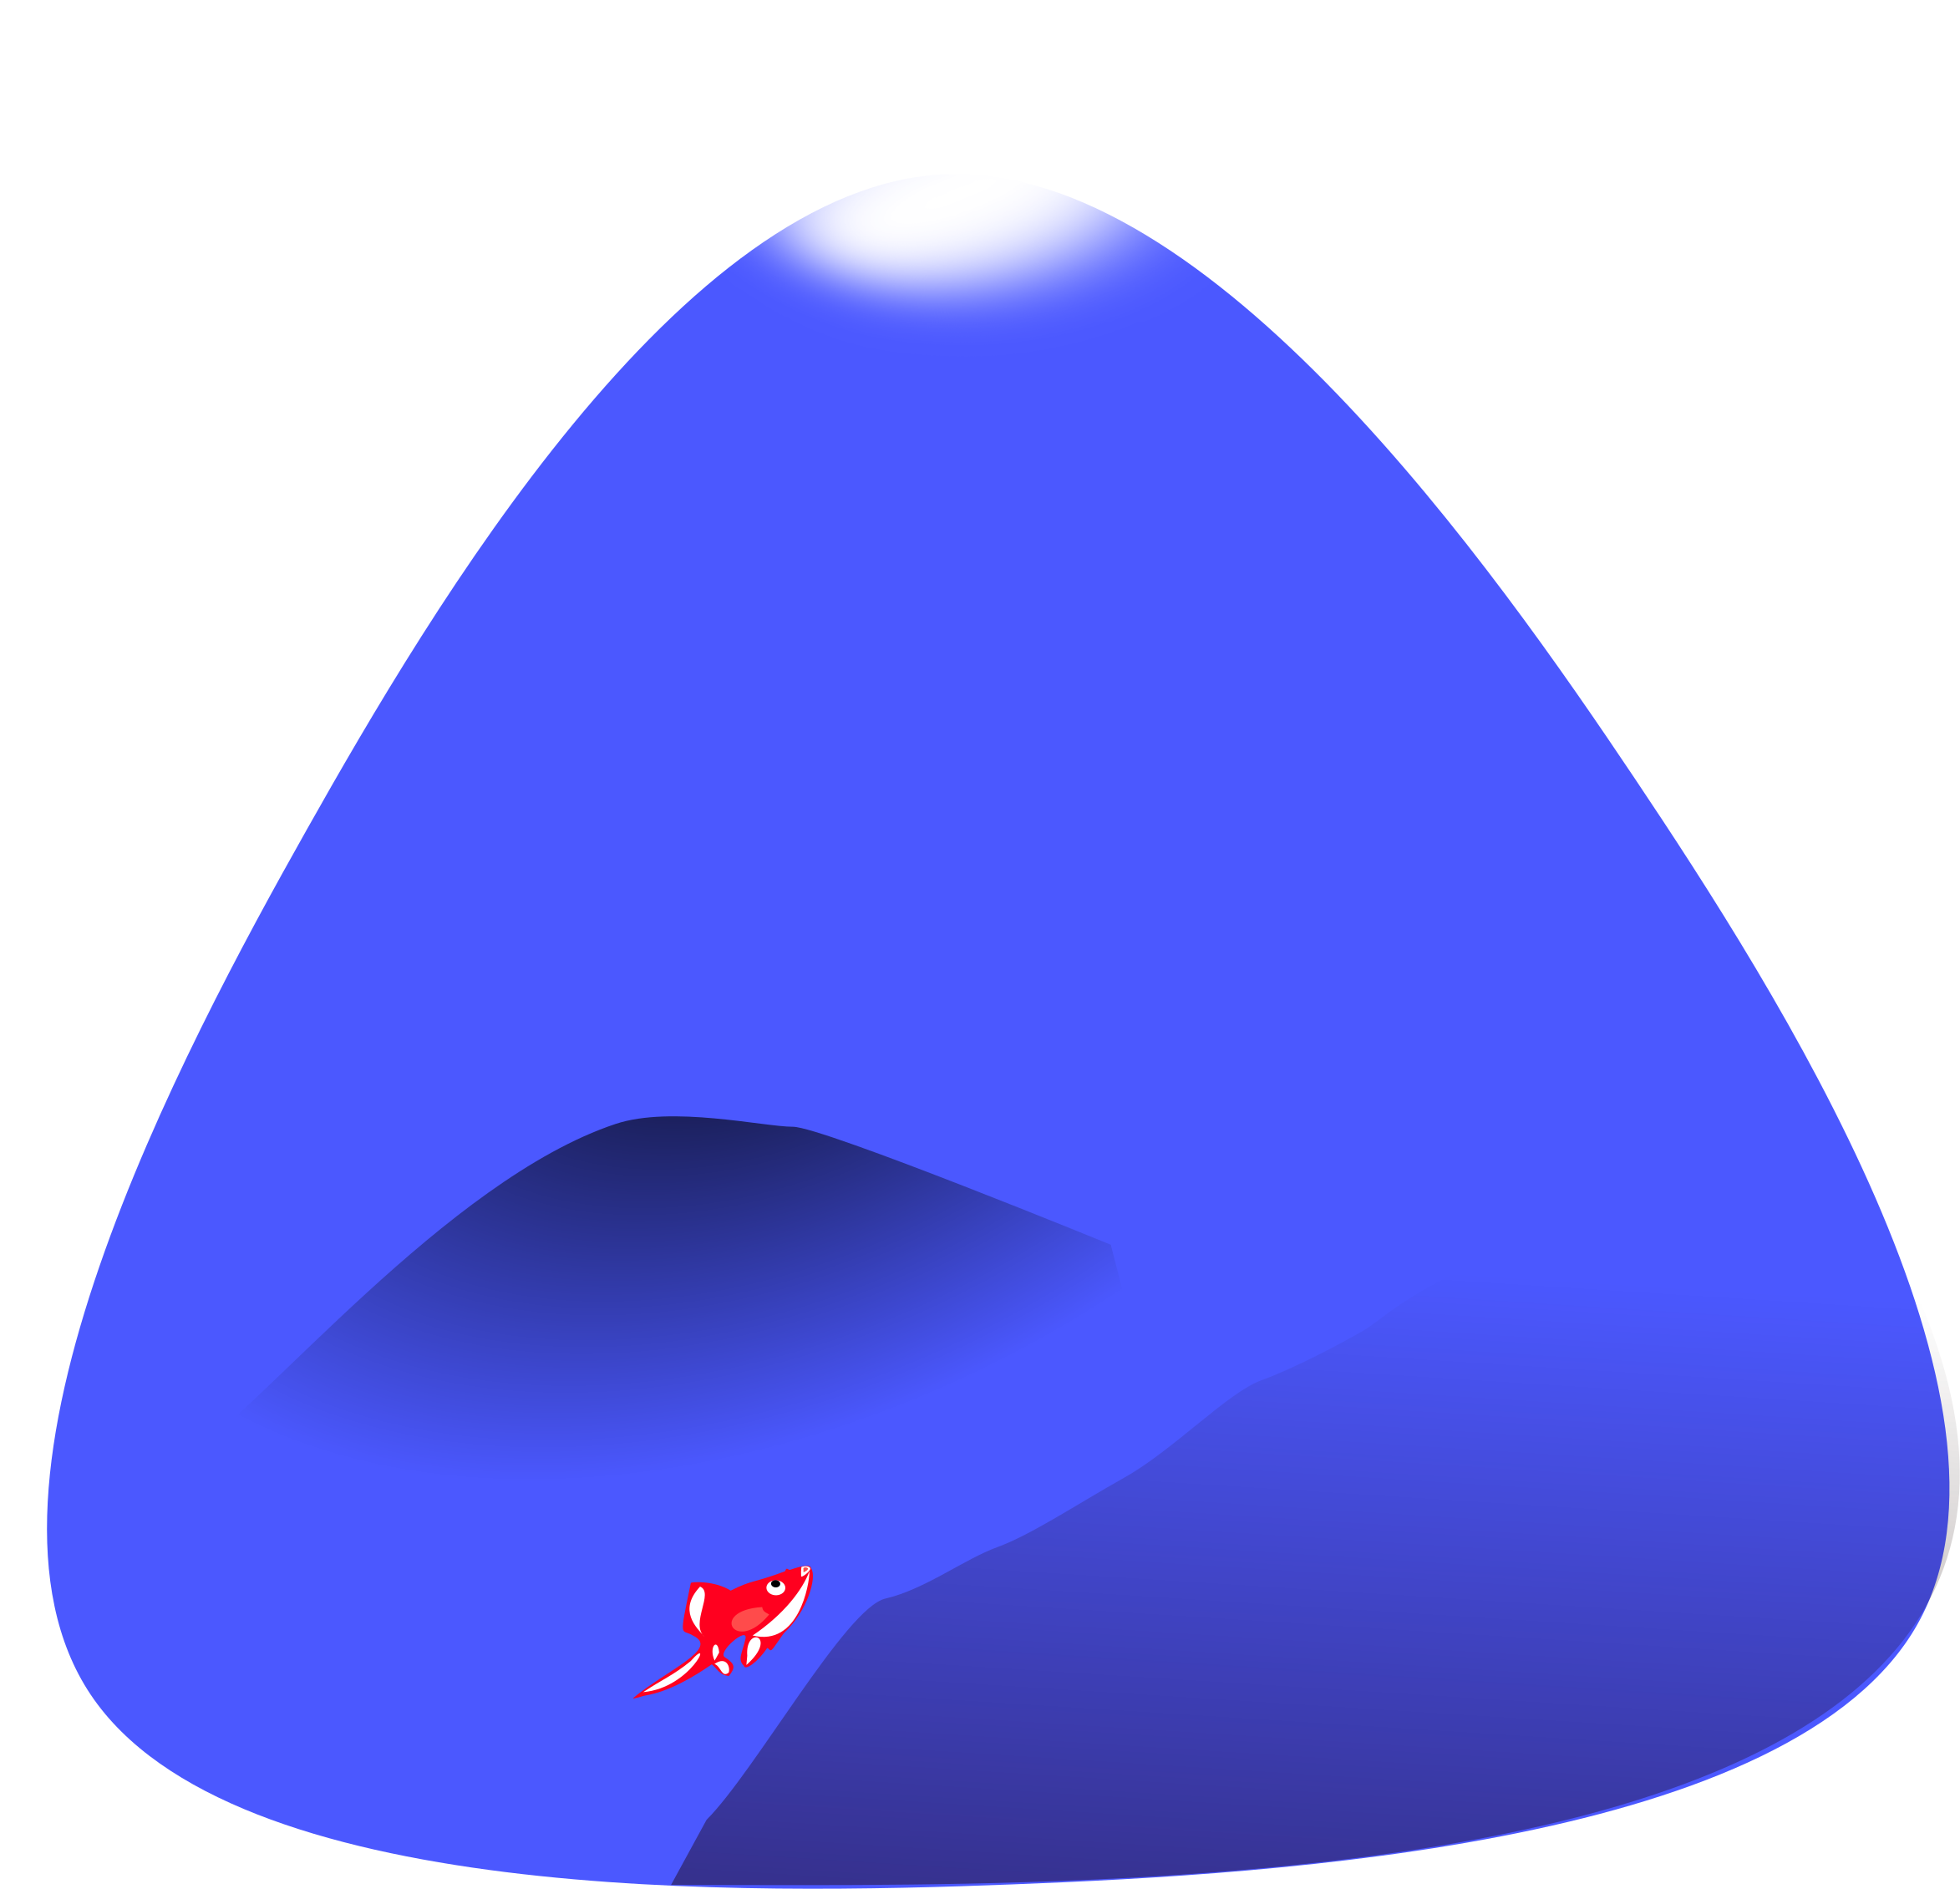 Big Image - Swim Cap (2400x2400)